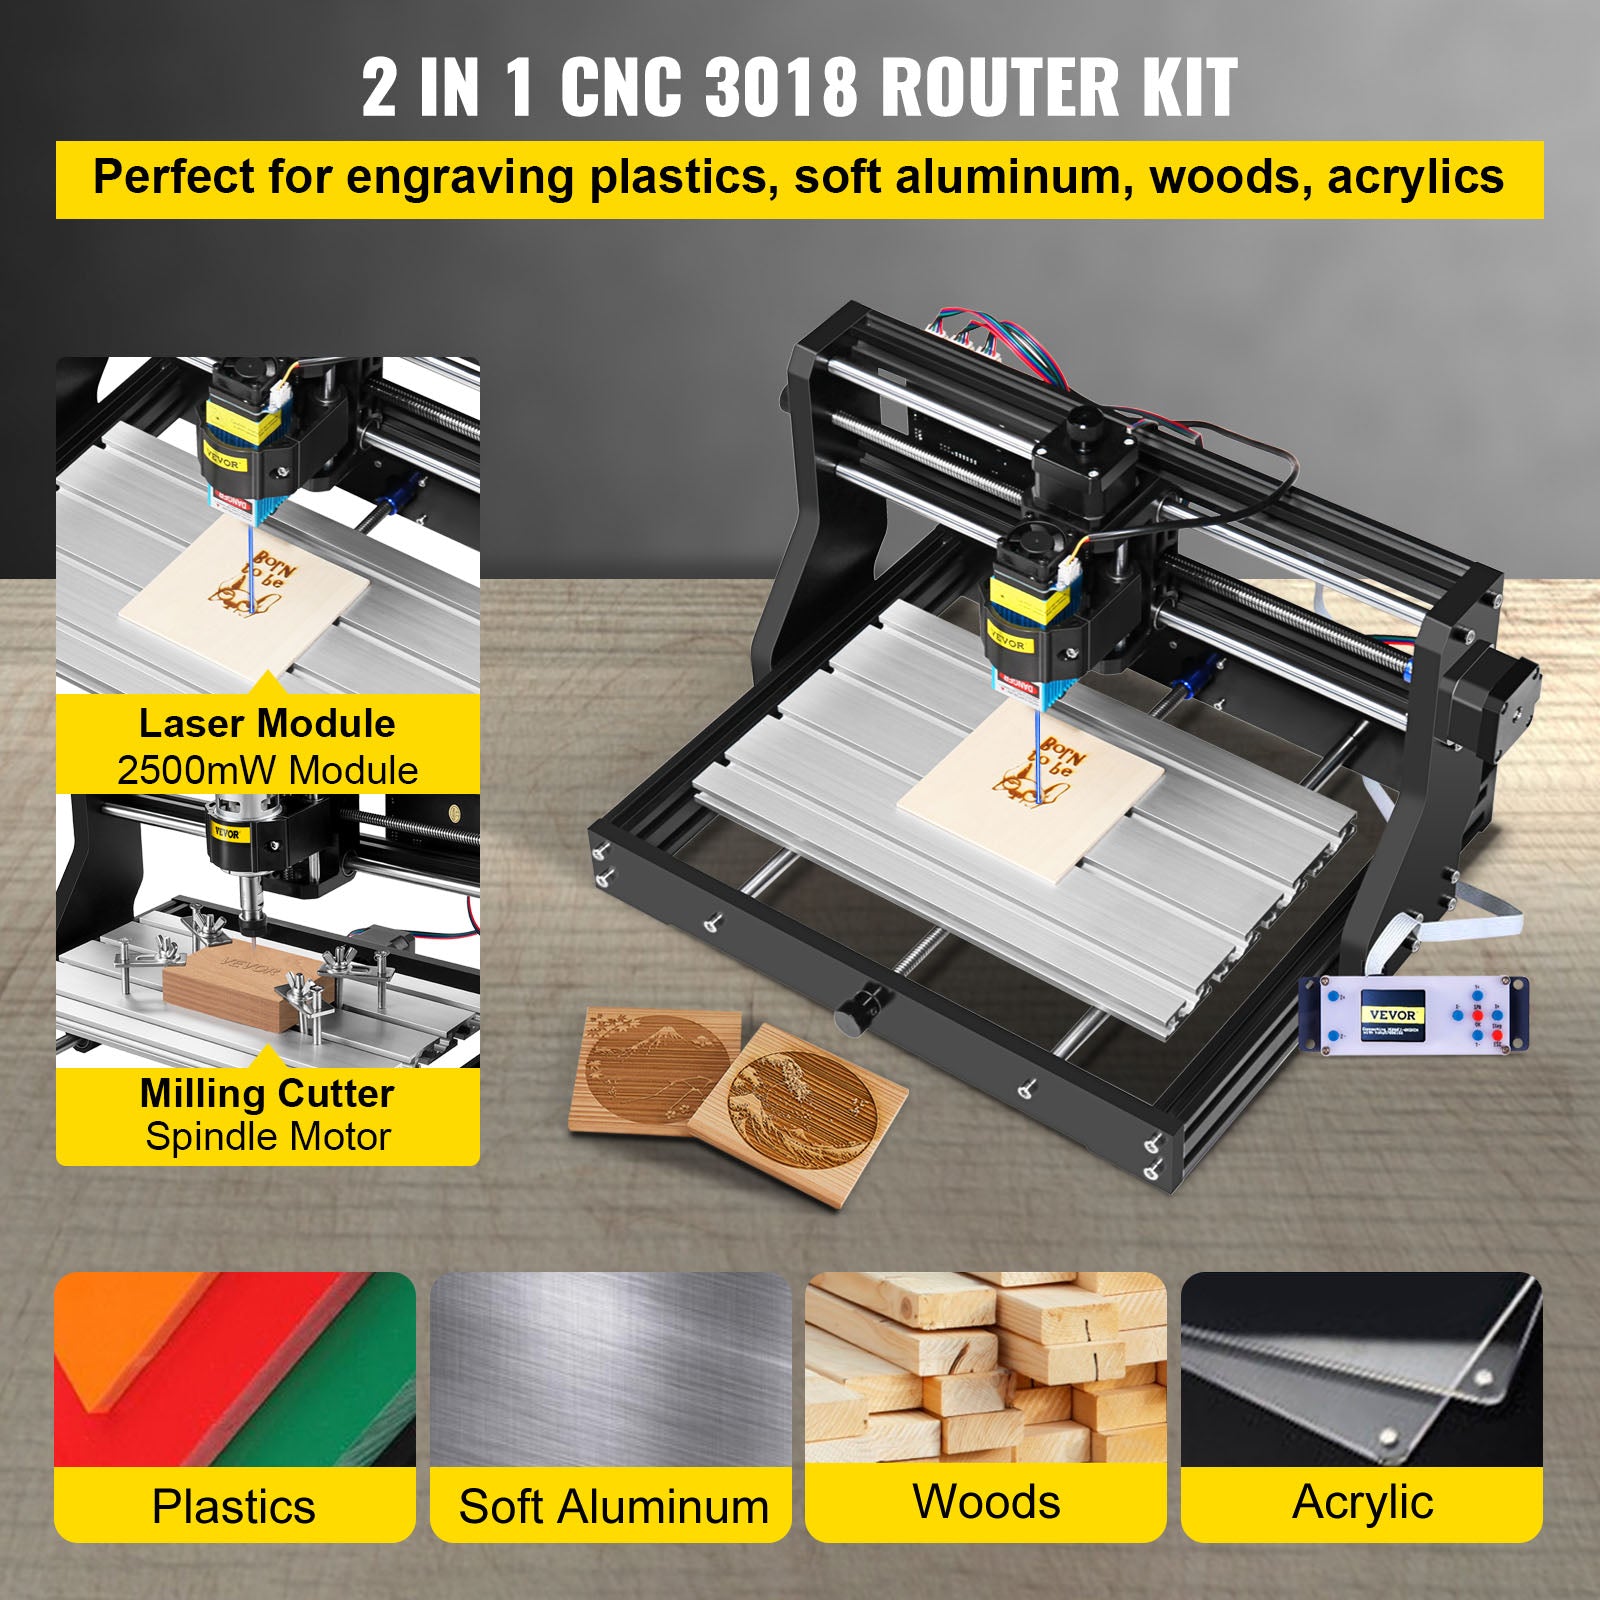 CNC Router Engraver, Laser Module, USB Port